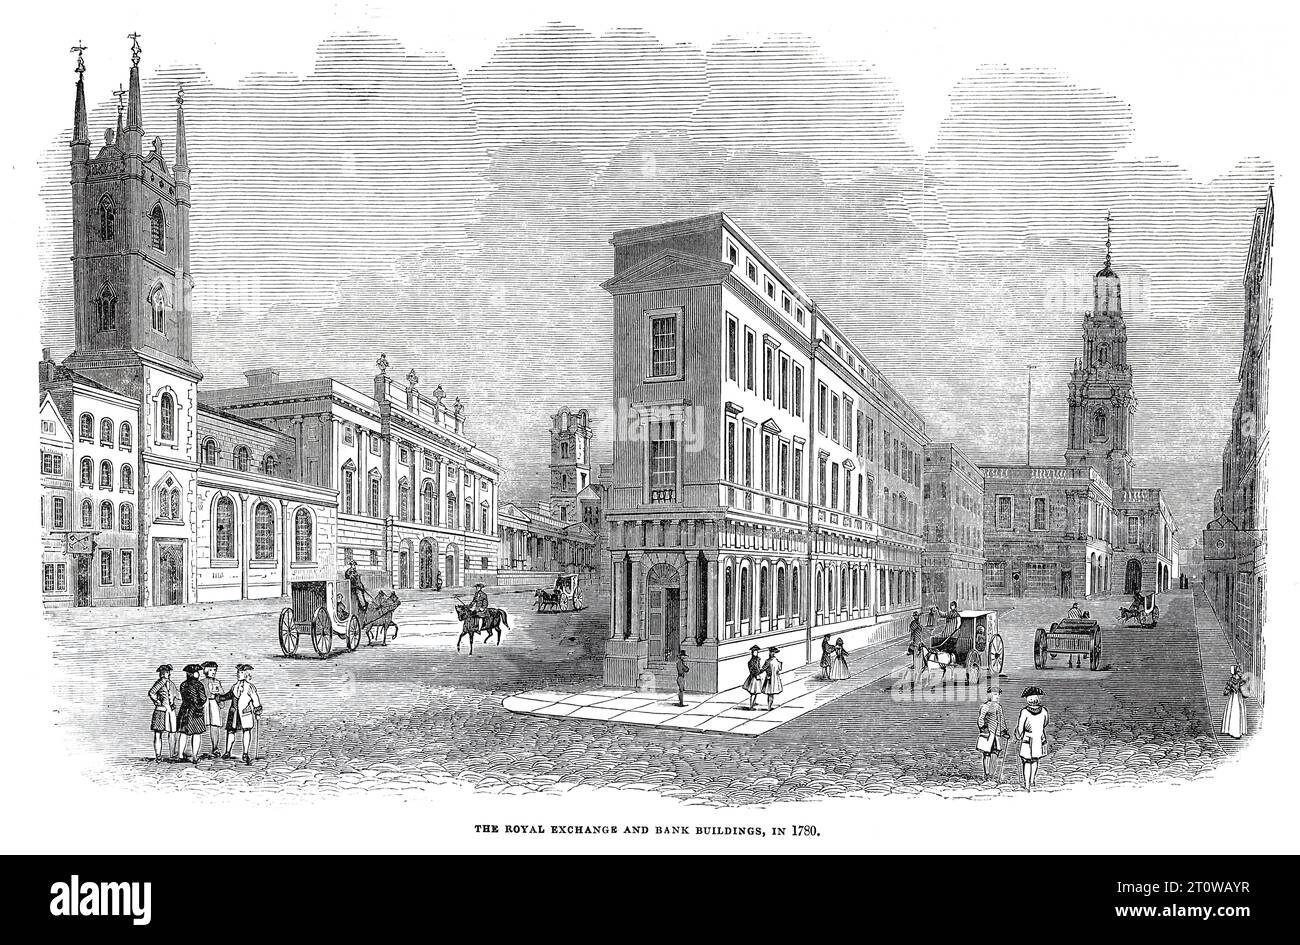 Edificios de la Bolsa Real y del Banco, Londres en 1780. Ilustración en blanco y negro del London Illustrated News; 1844. Foto de stock